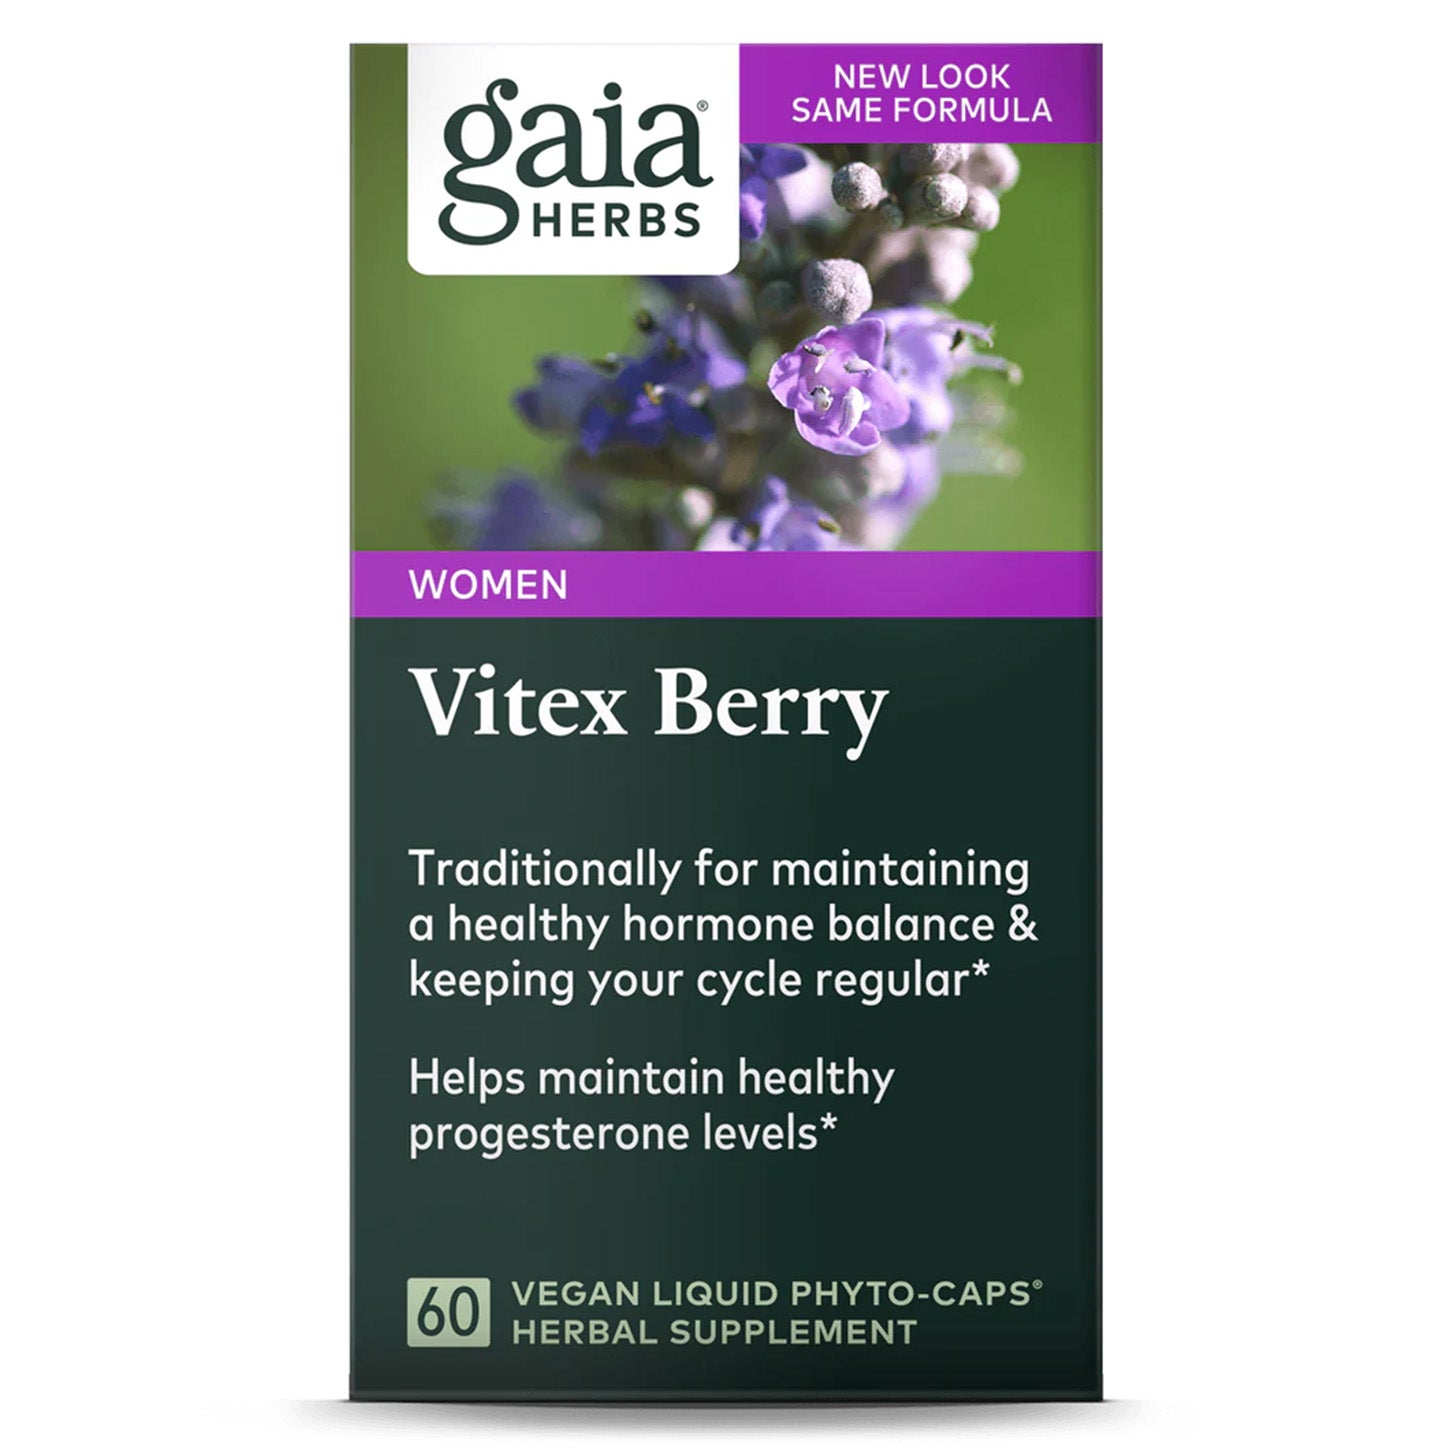 Gaia Herbs Vitex Berry: Equilibrio Hormonal y Bienestar Femenino | ProHealth Shop [Panamá]